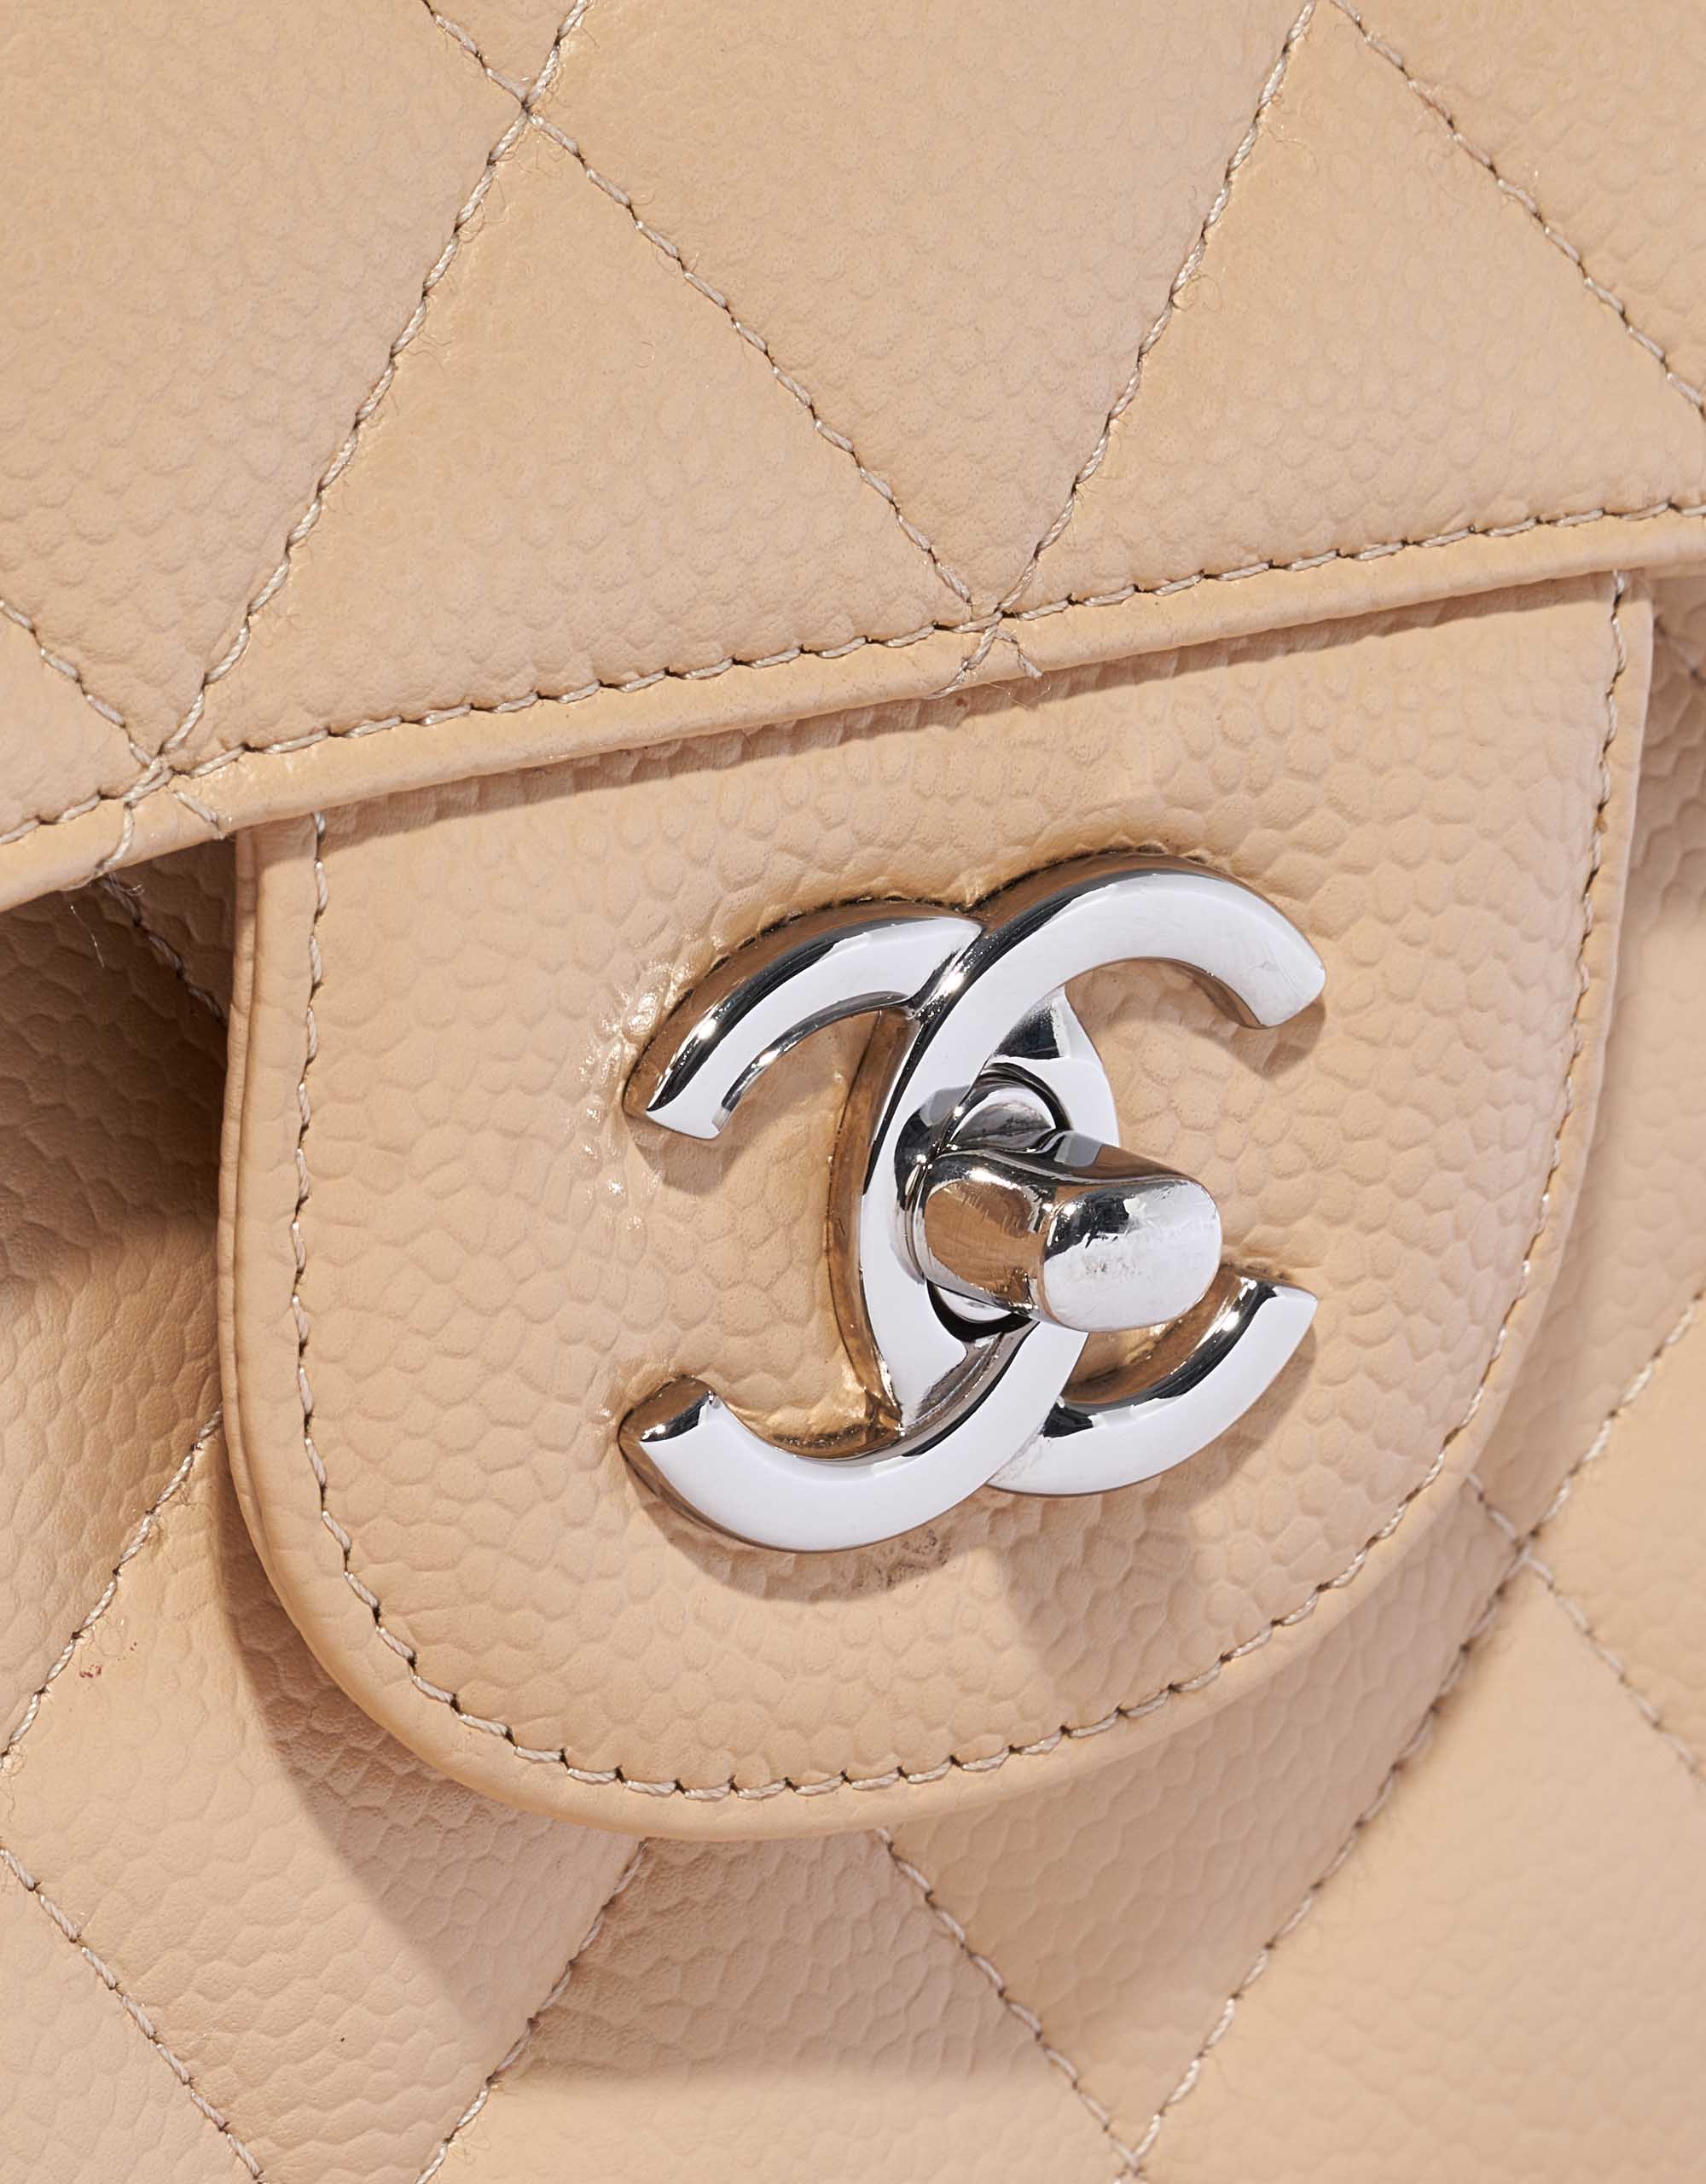 Chanel Timeless Medium flap bag beige grained calfskin